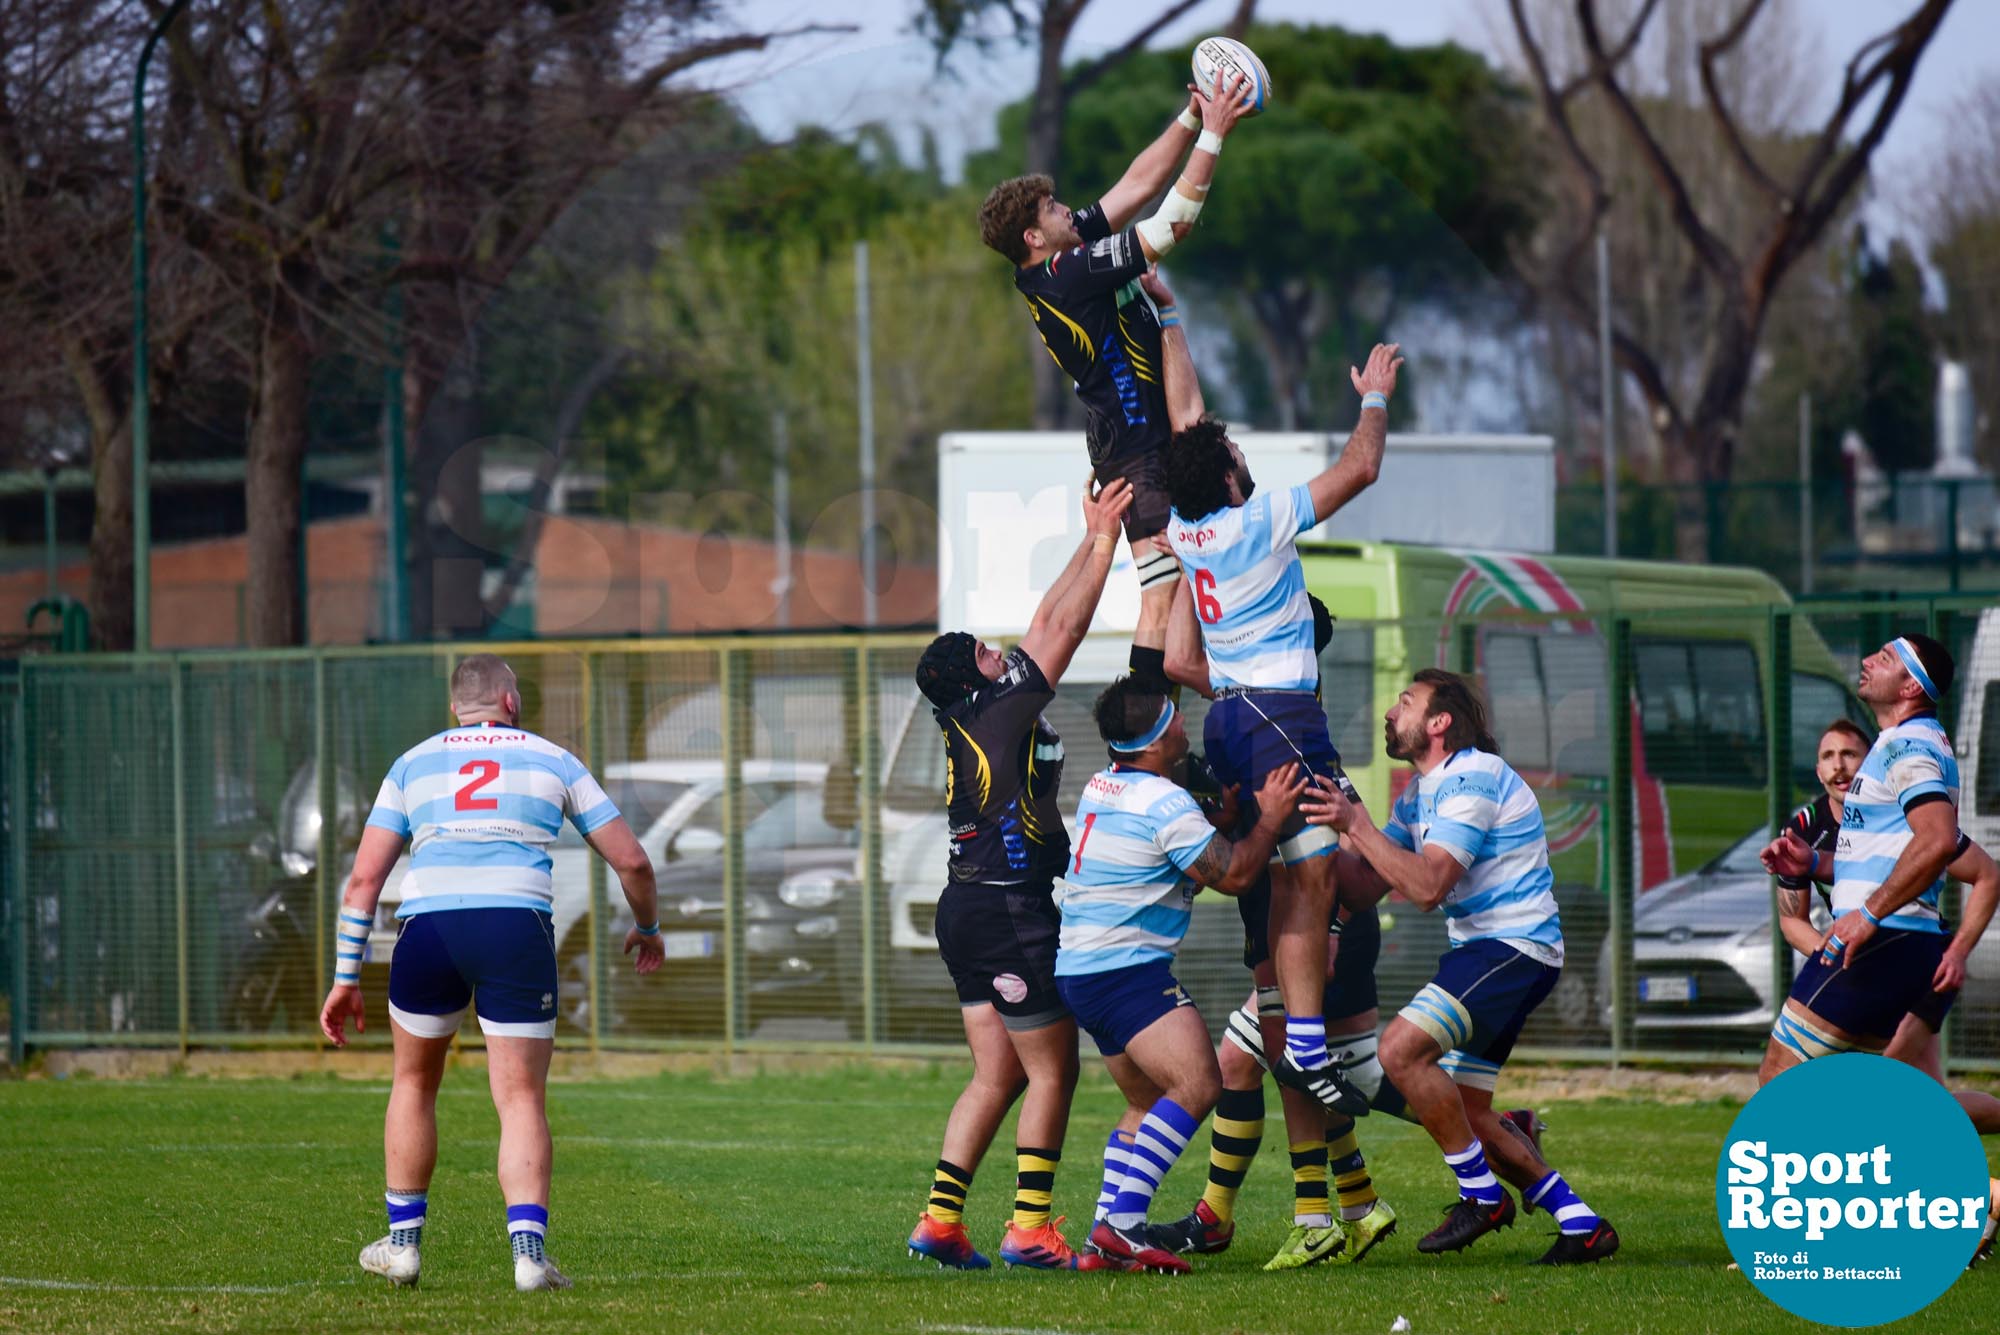 Lazio Rugby vs Viadana
© Foto di Roberto Bettacchi